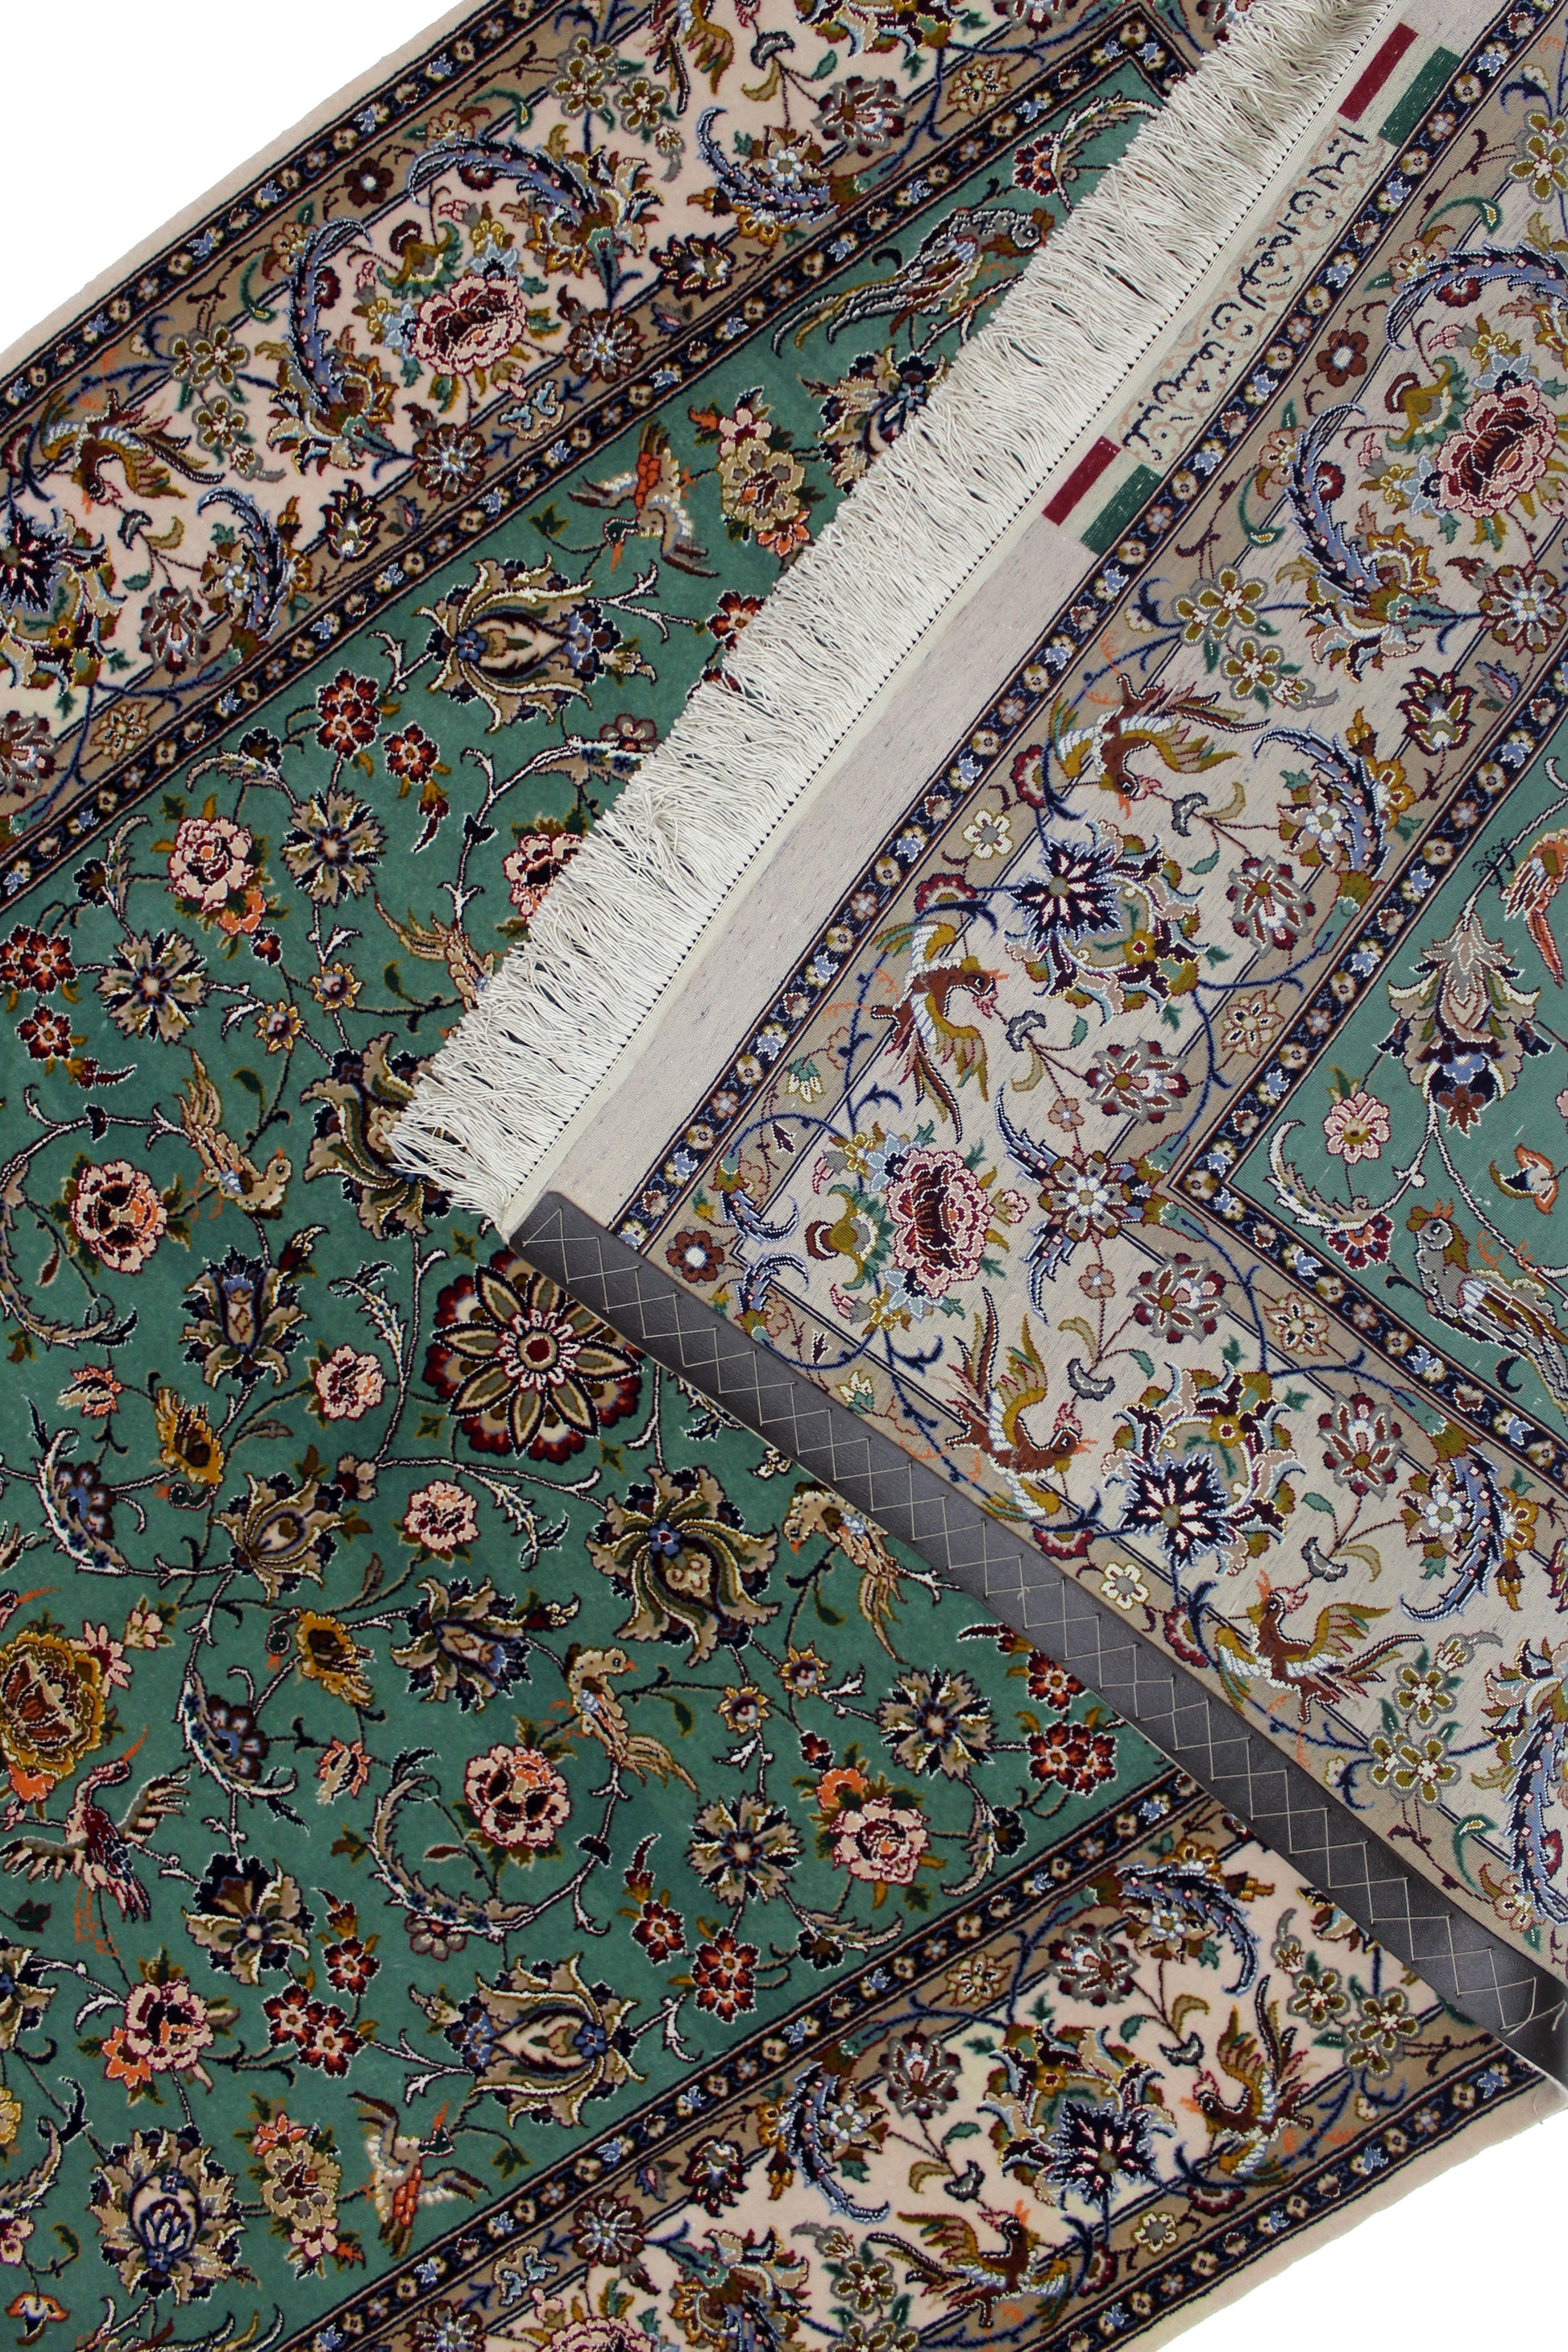 Isfahan Area Rug 162cm x 112cm